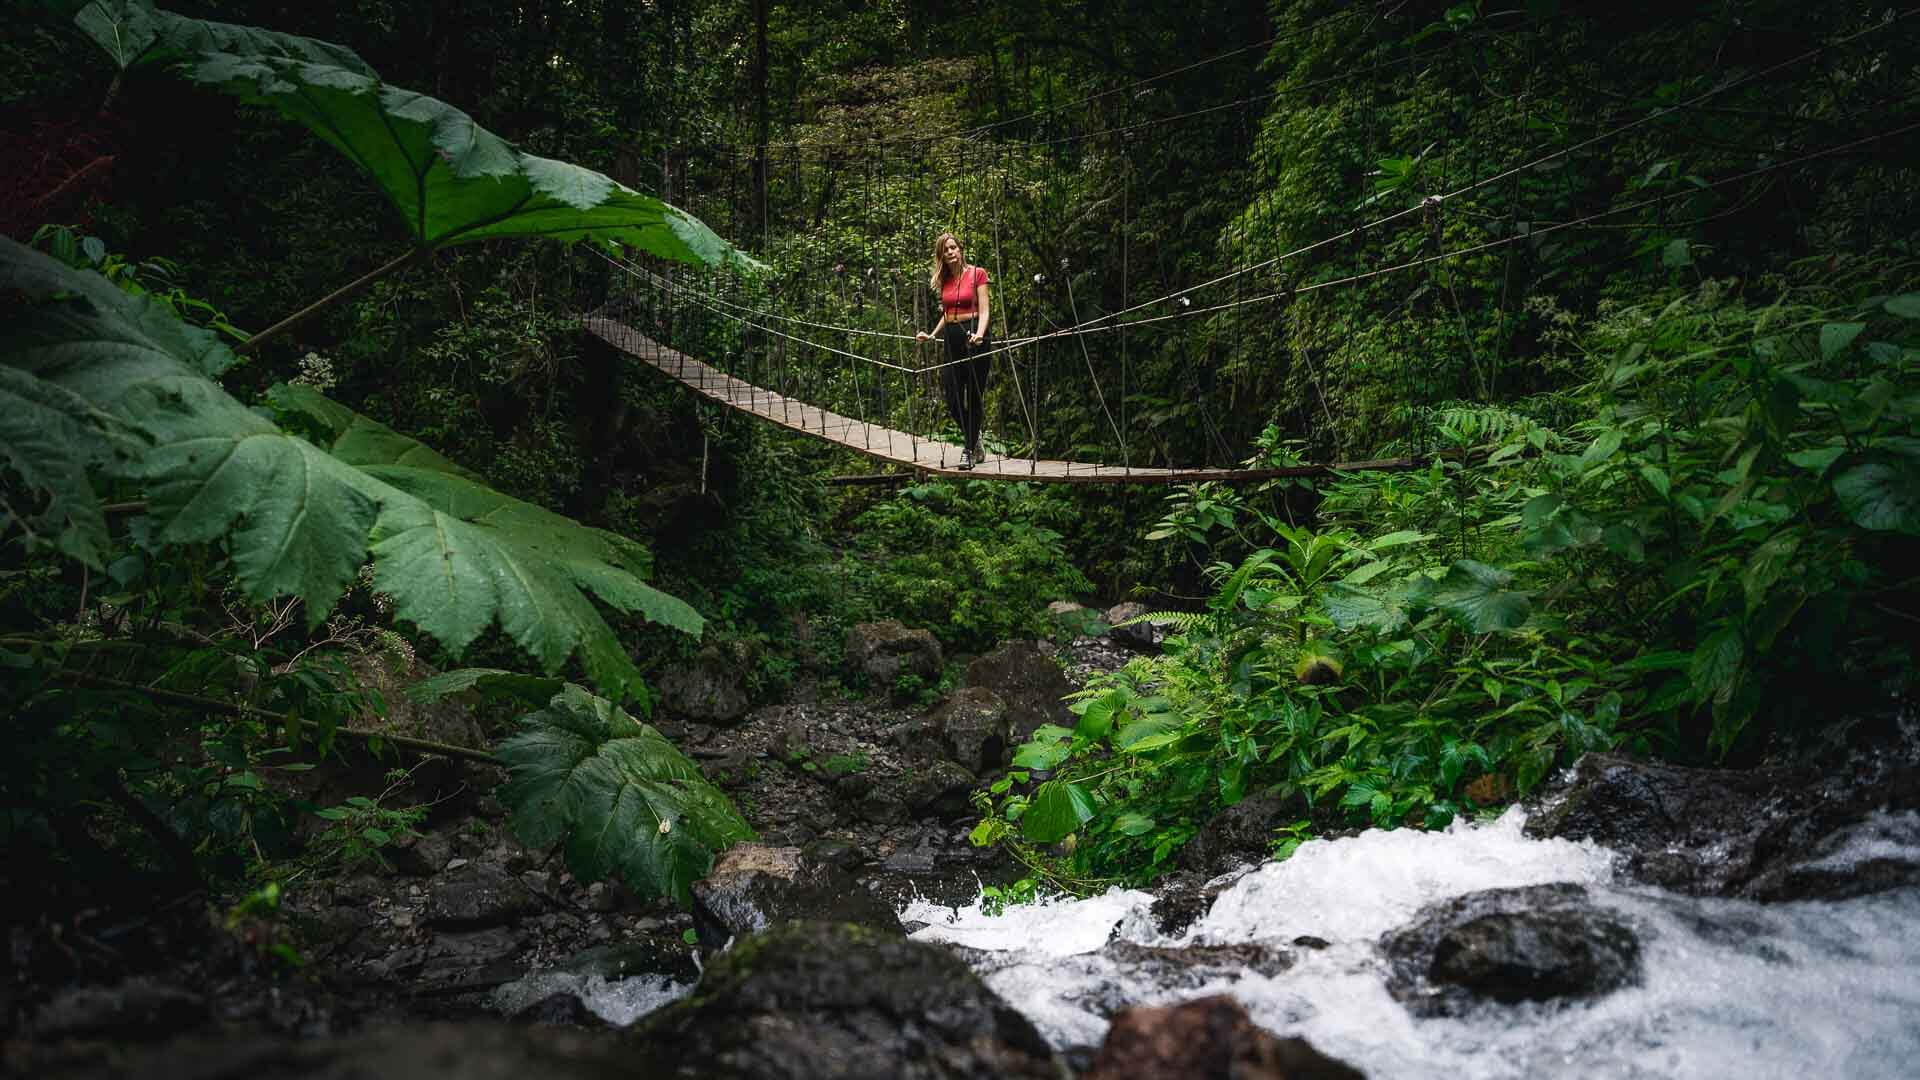 Podróż po Kostaryce to okazja na doświadczenie wiszących mostów